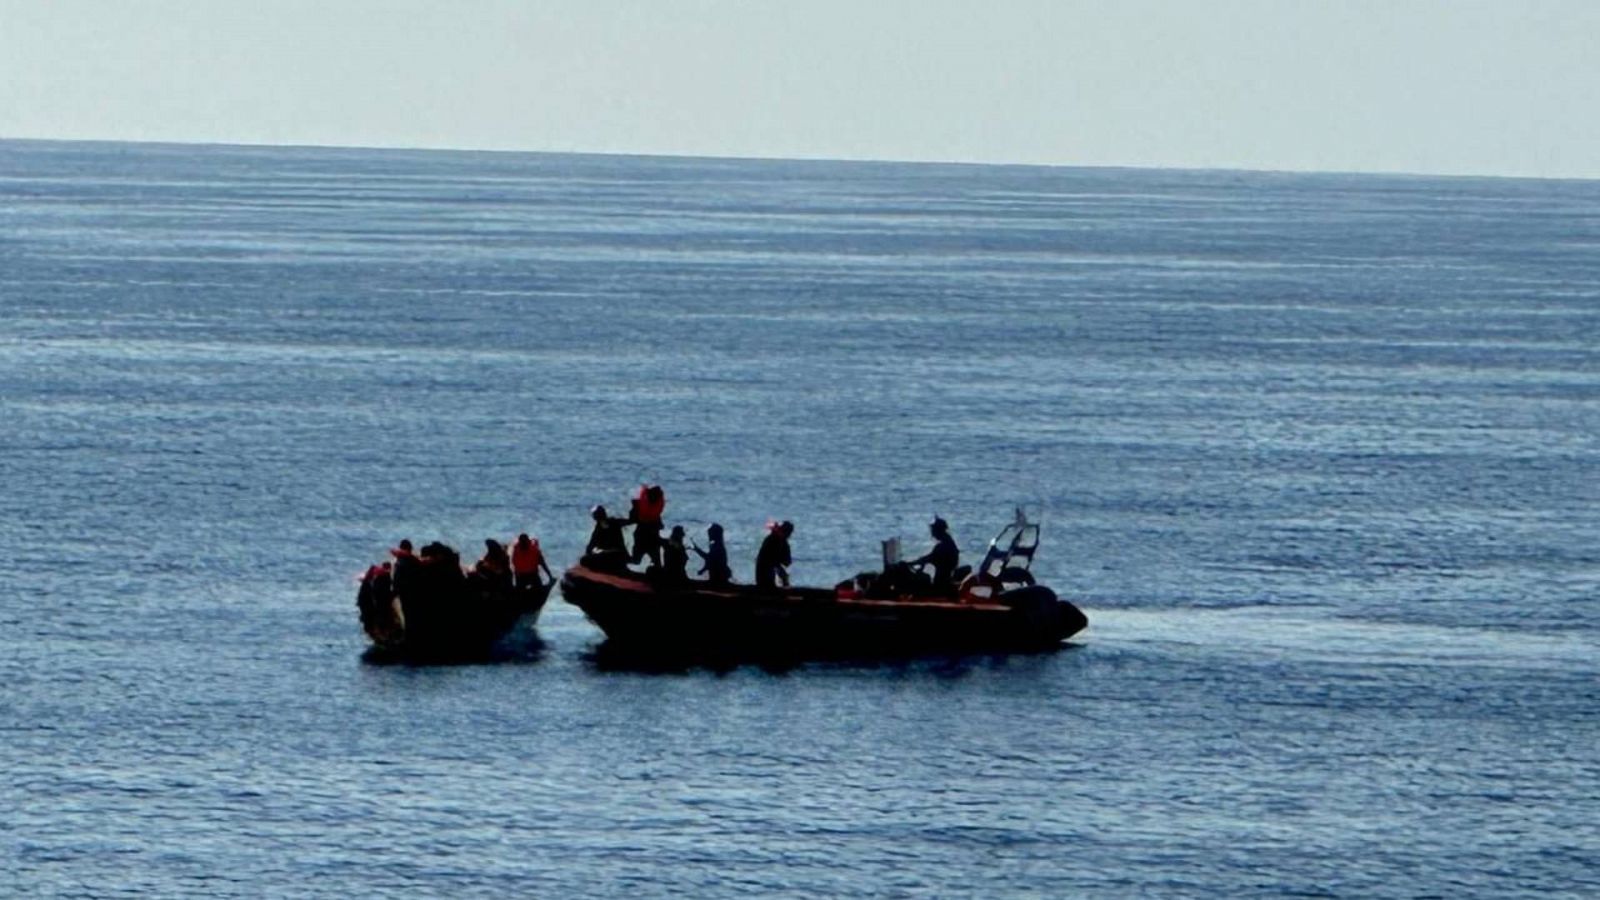 Imagen de archivo (4 de agosto). Rescate de migrantes en el Mediterráneo. EFE/Esther Camps / Open Arms